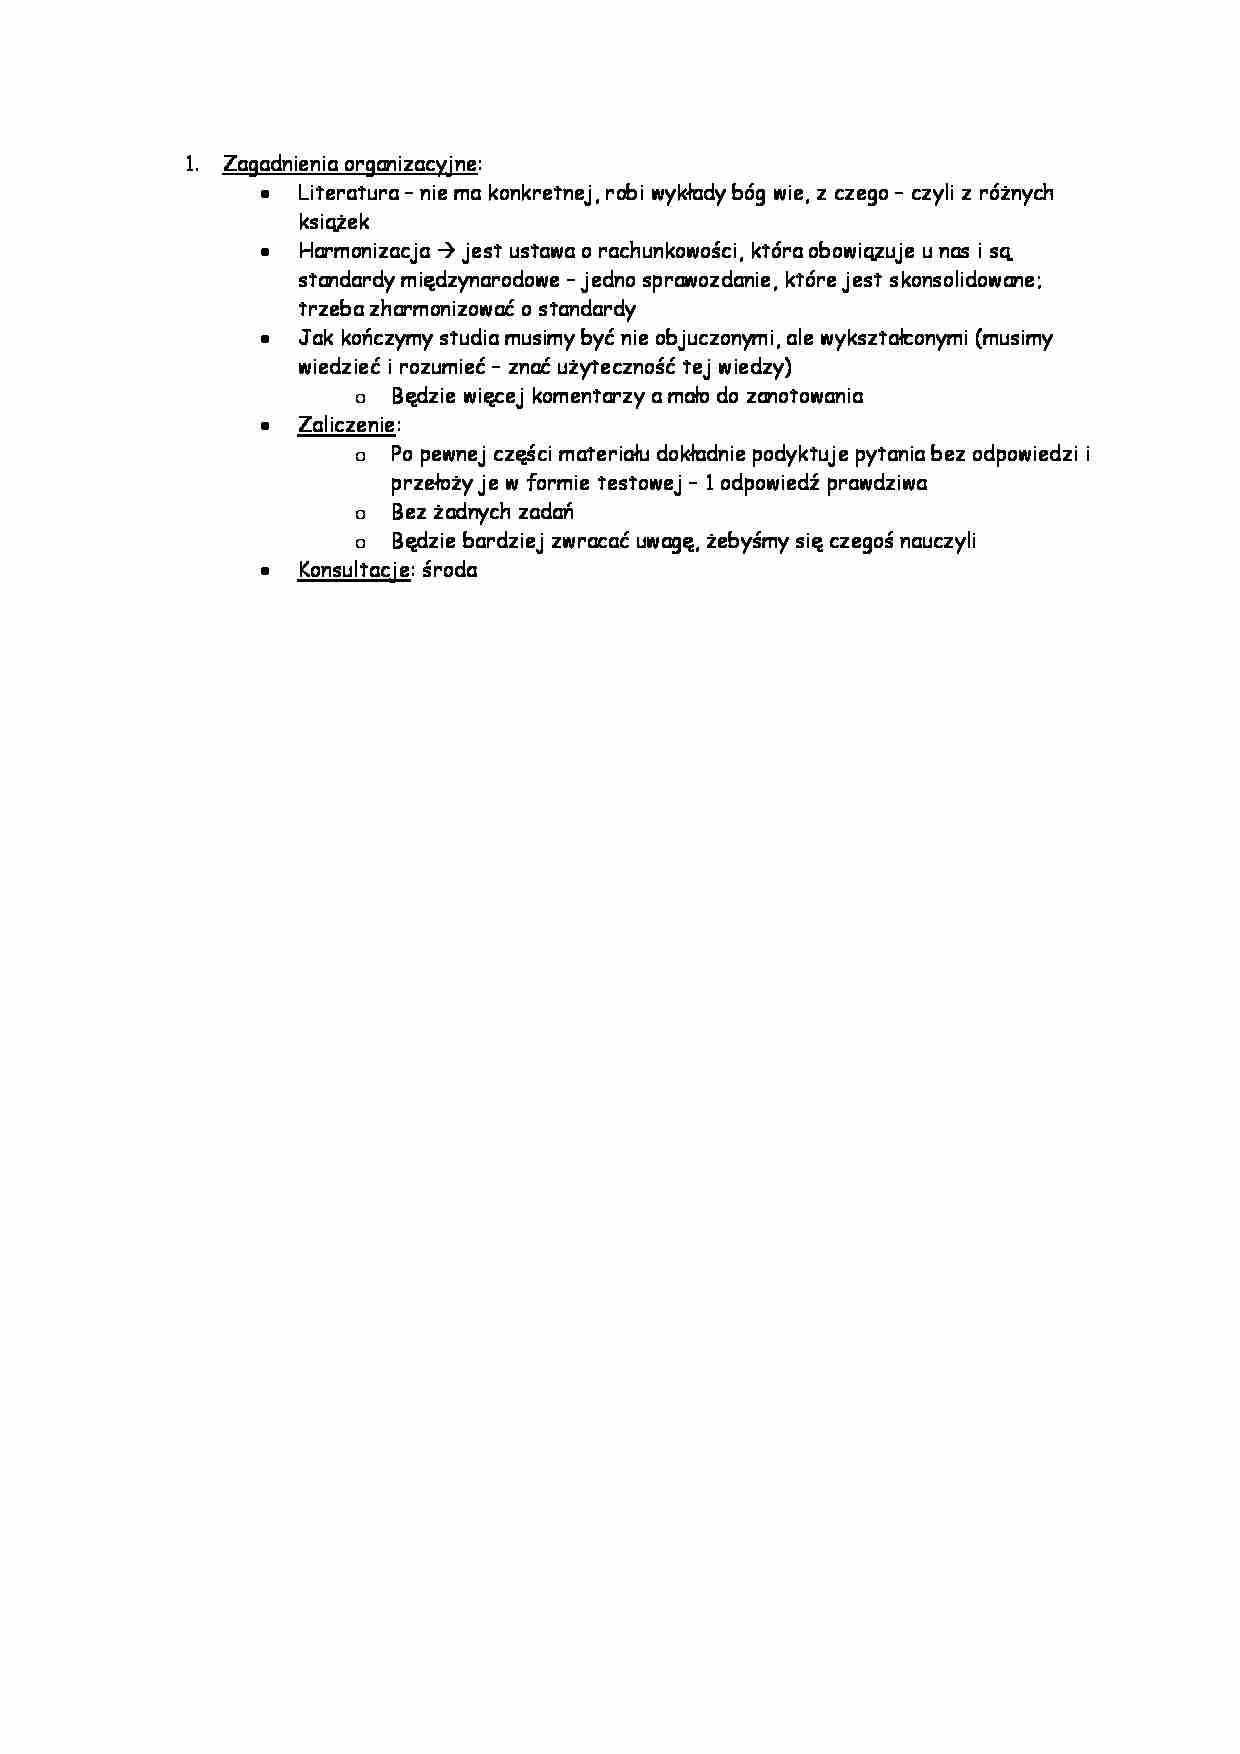 Zagadnienia organizacyjne z przedmiotu - strona 1